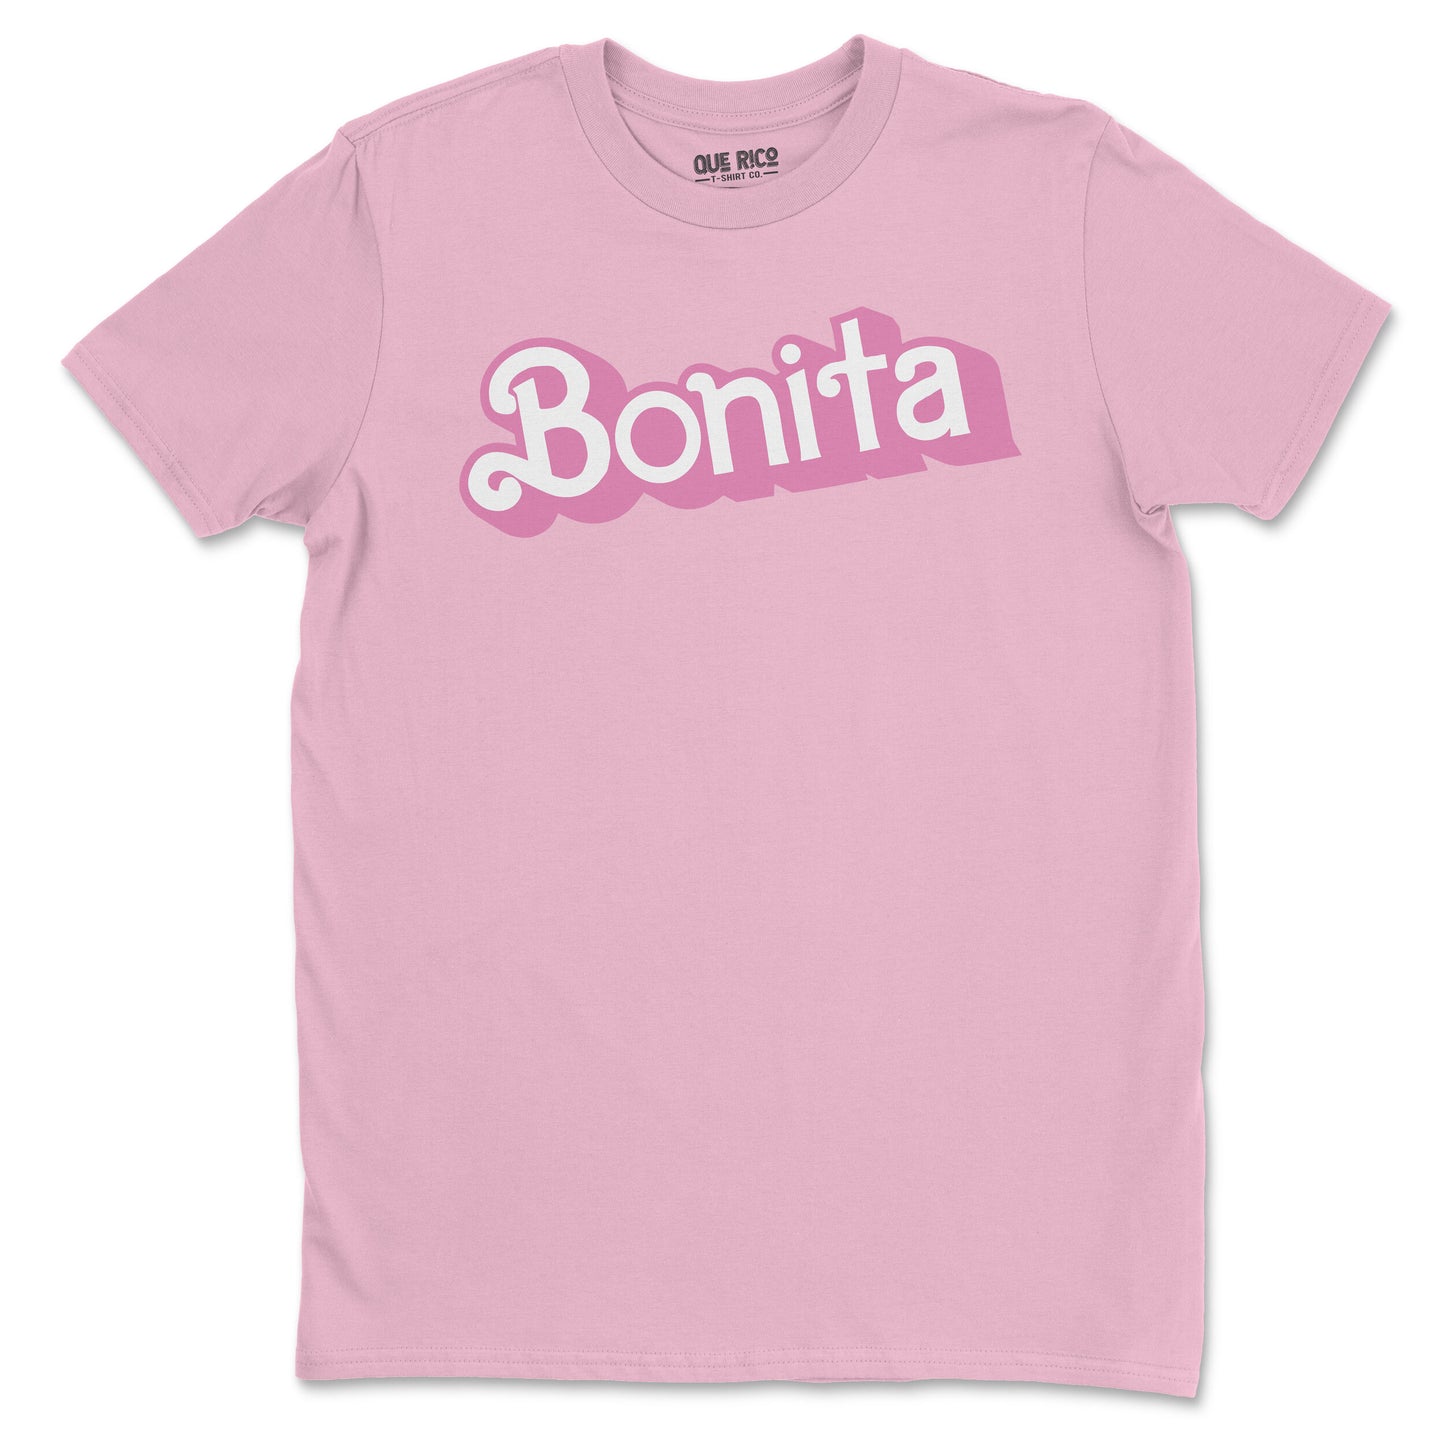 Bonita T-Shirt